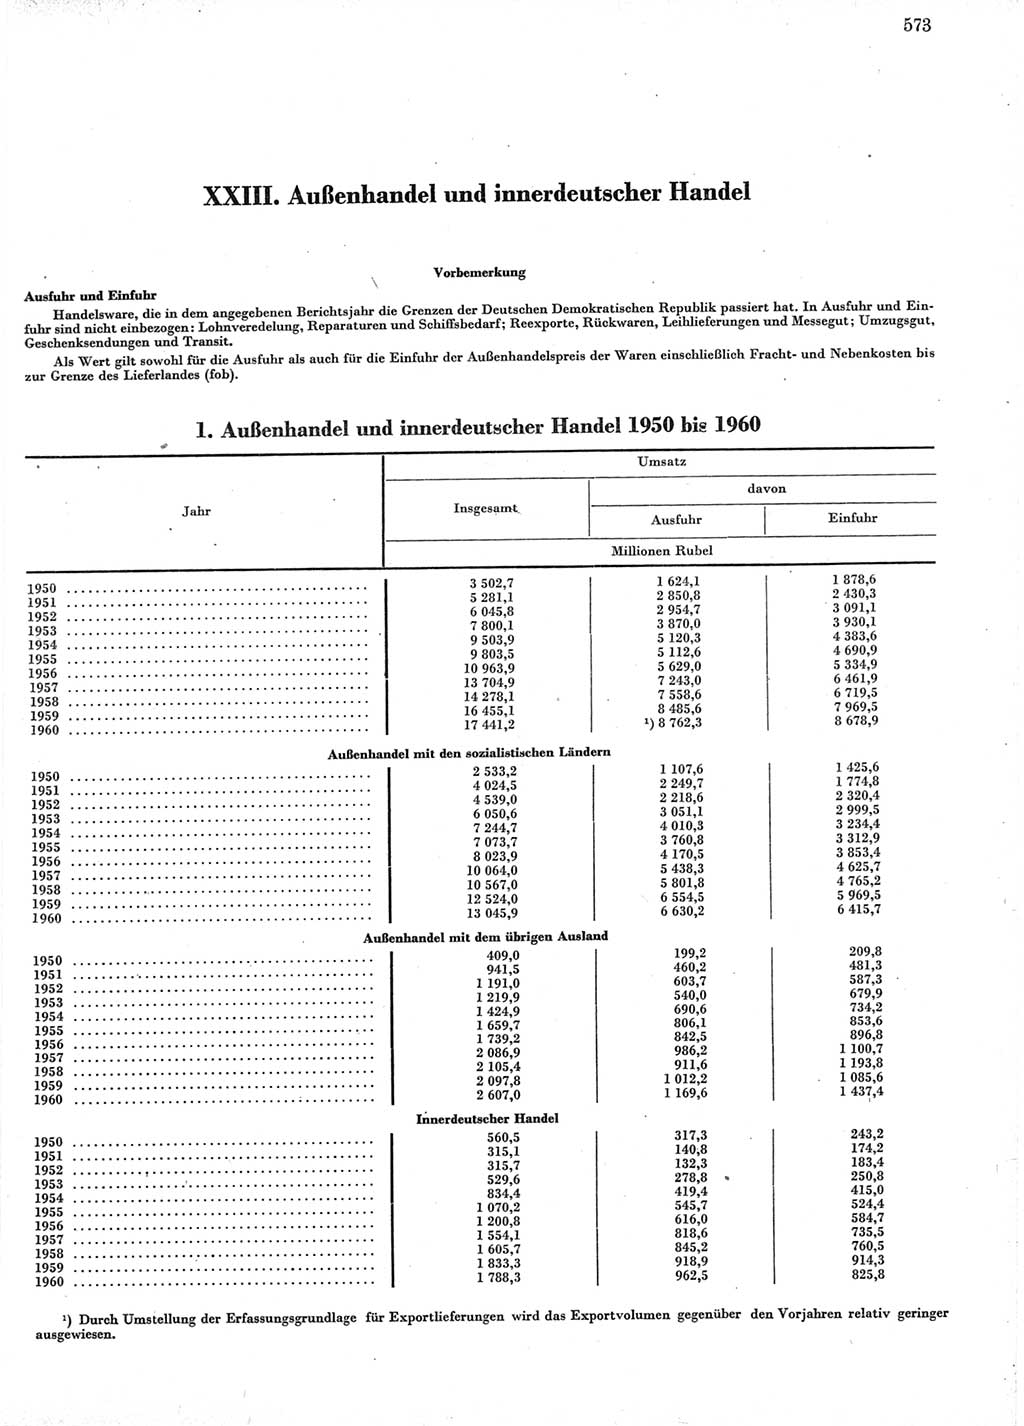 Statistisches Jahrbuch der Deutschen Demokratischen Republik (DDR) 1960-1961, Seite 573 (Stat. Jb. DDR 1960-1961, S. 573)